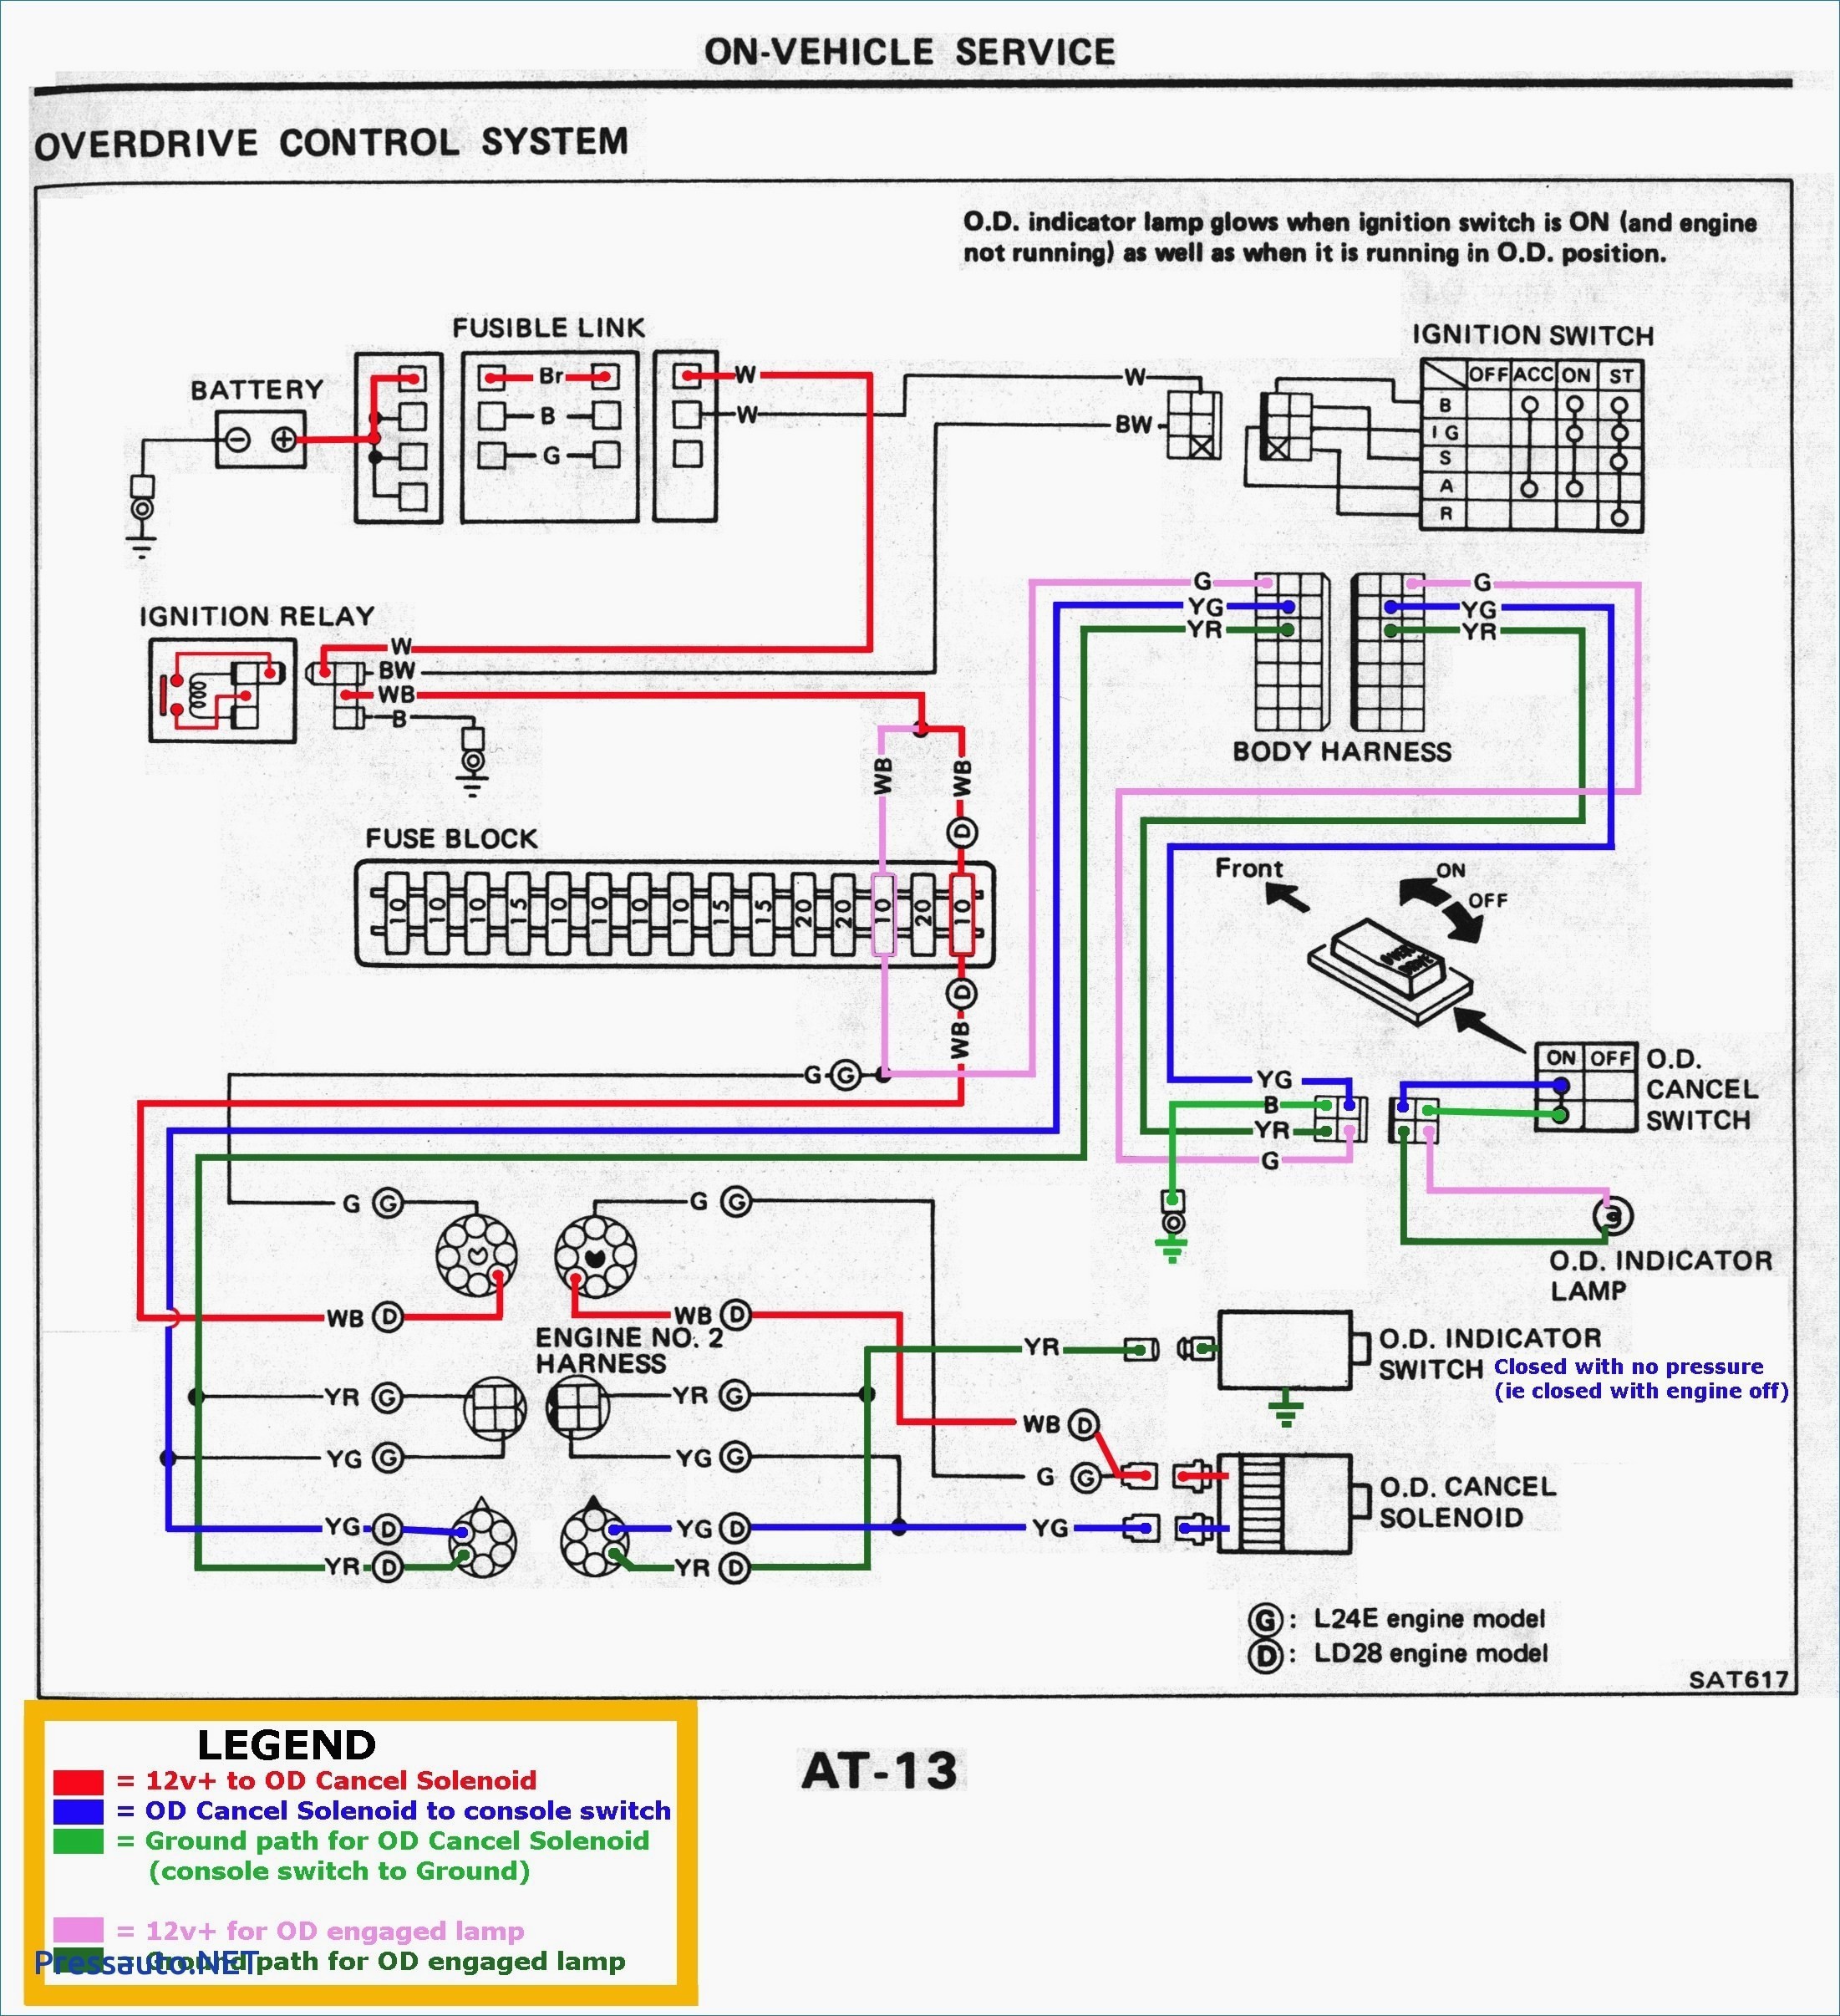 2000 Chevy Malibu Wiring Diagram 2008 Silverado 2500hd Wiring Diagram Of 2000 Chevy Malibu Wiring Diagram